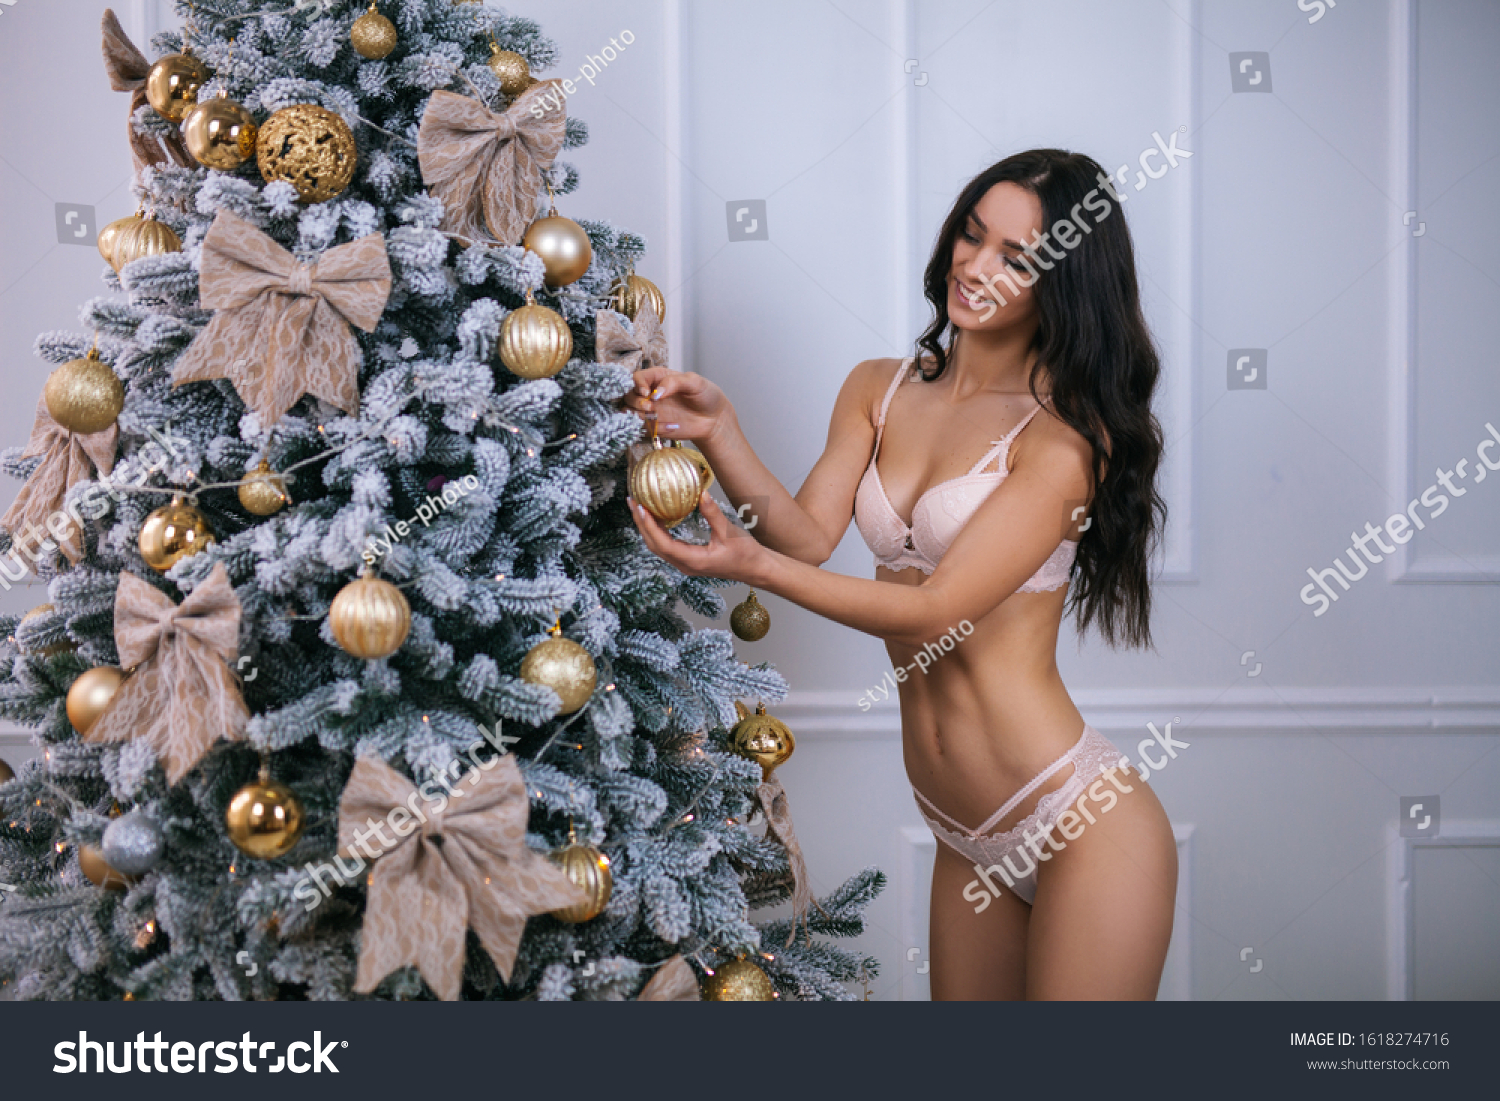 Жена наряжает елку обнаженной фото